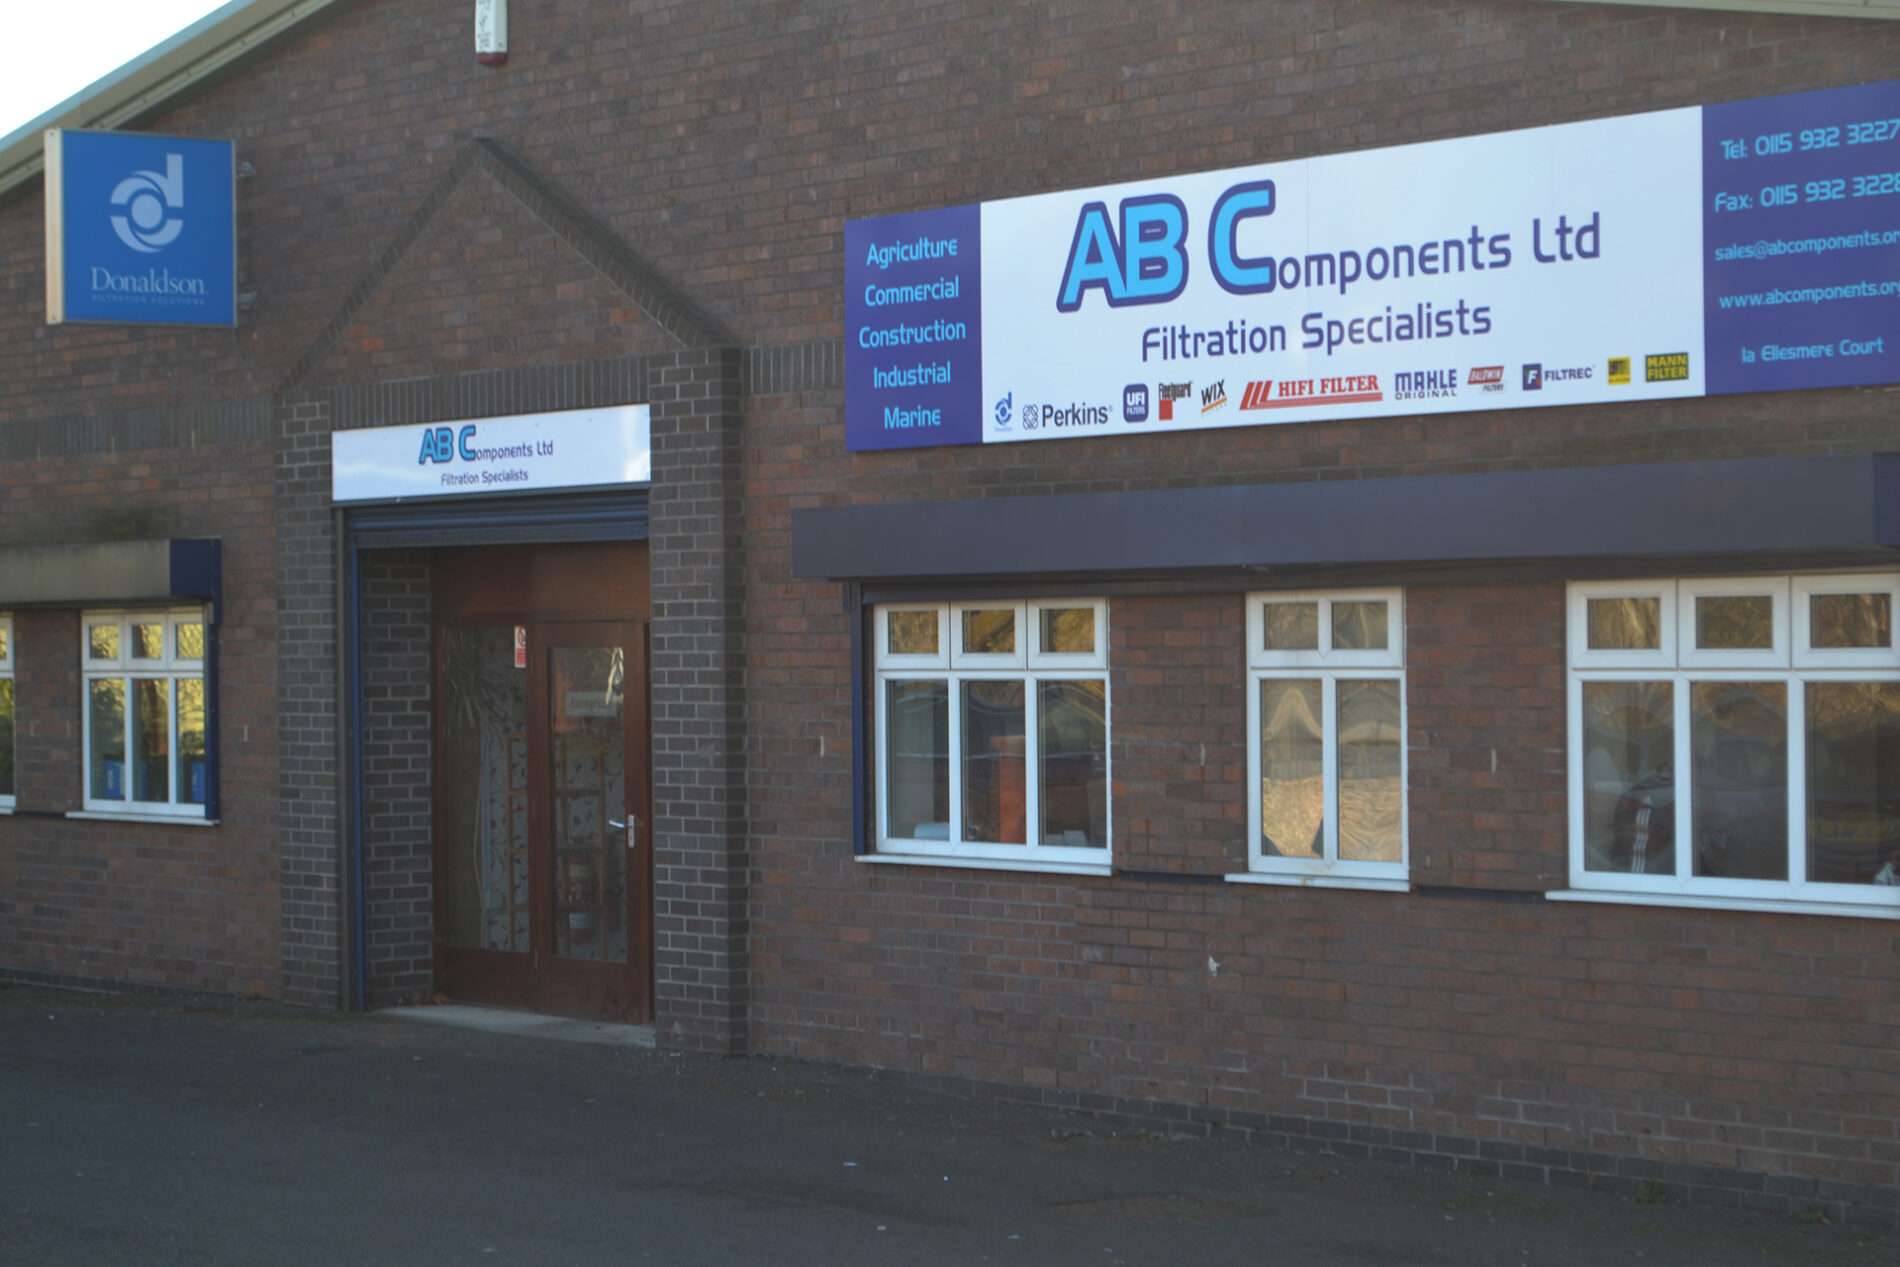 AB Components Ltd